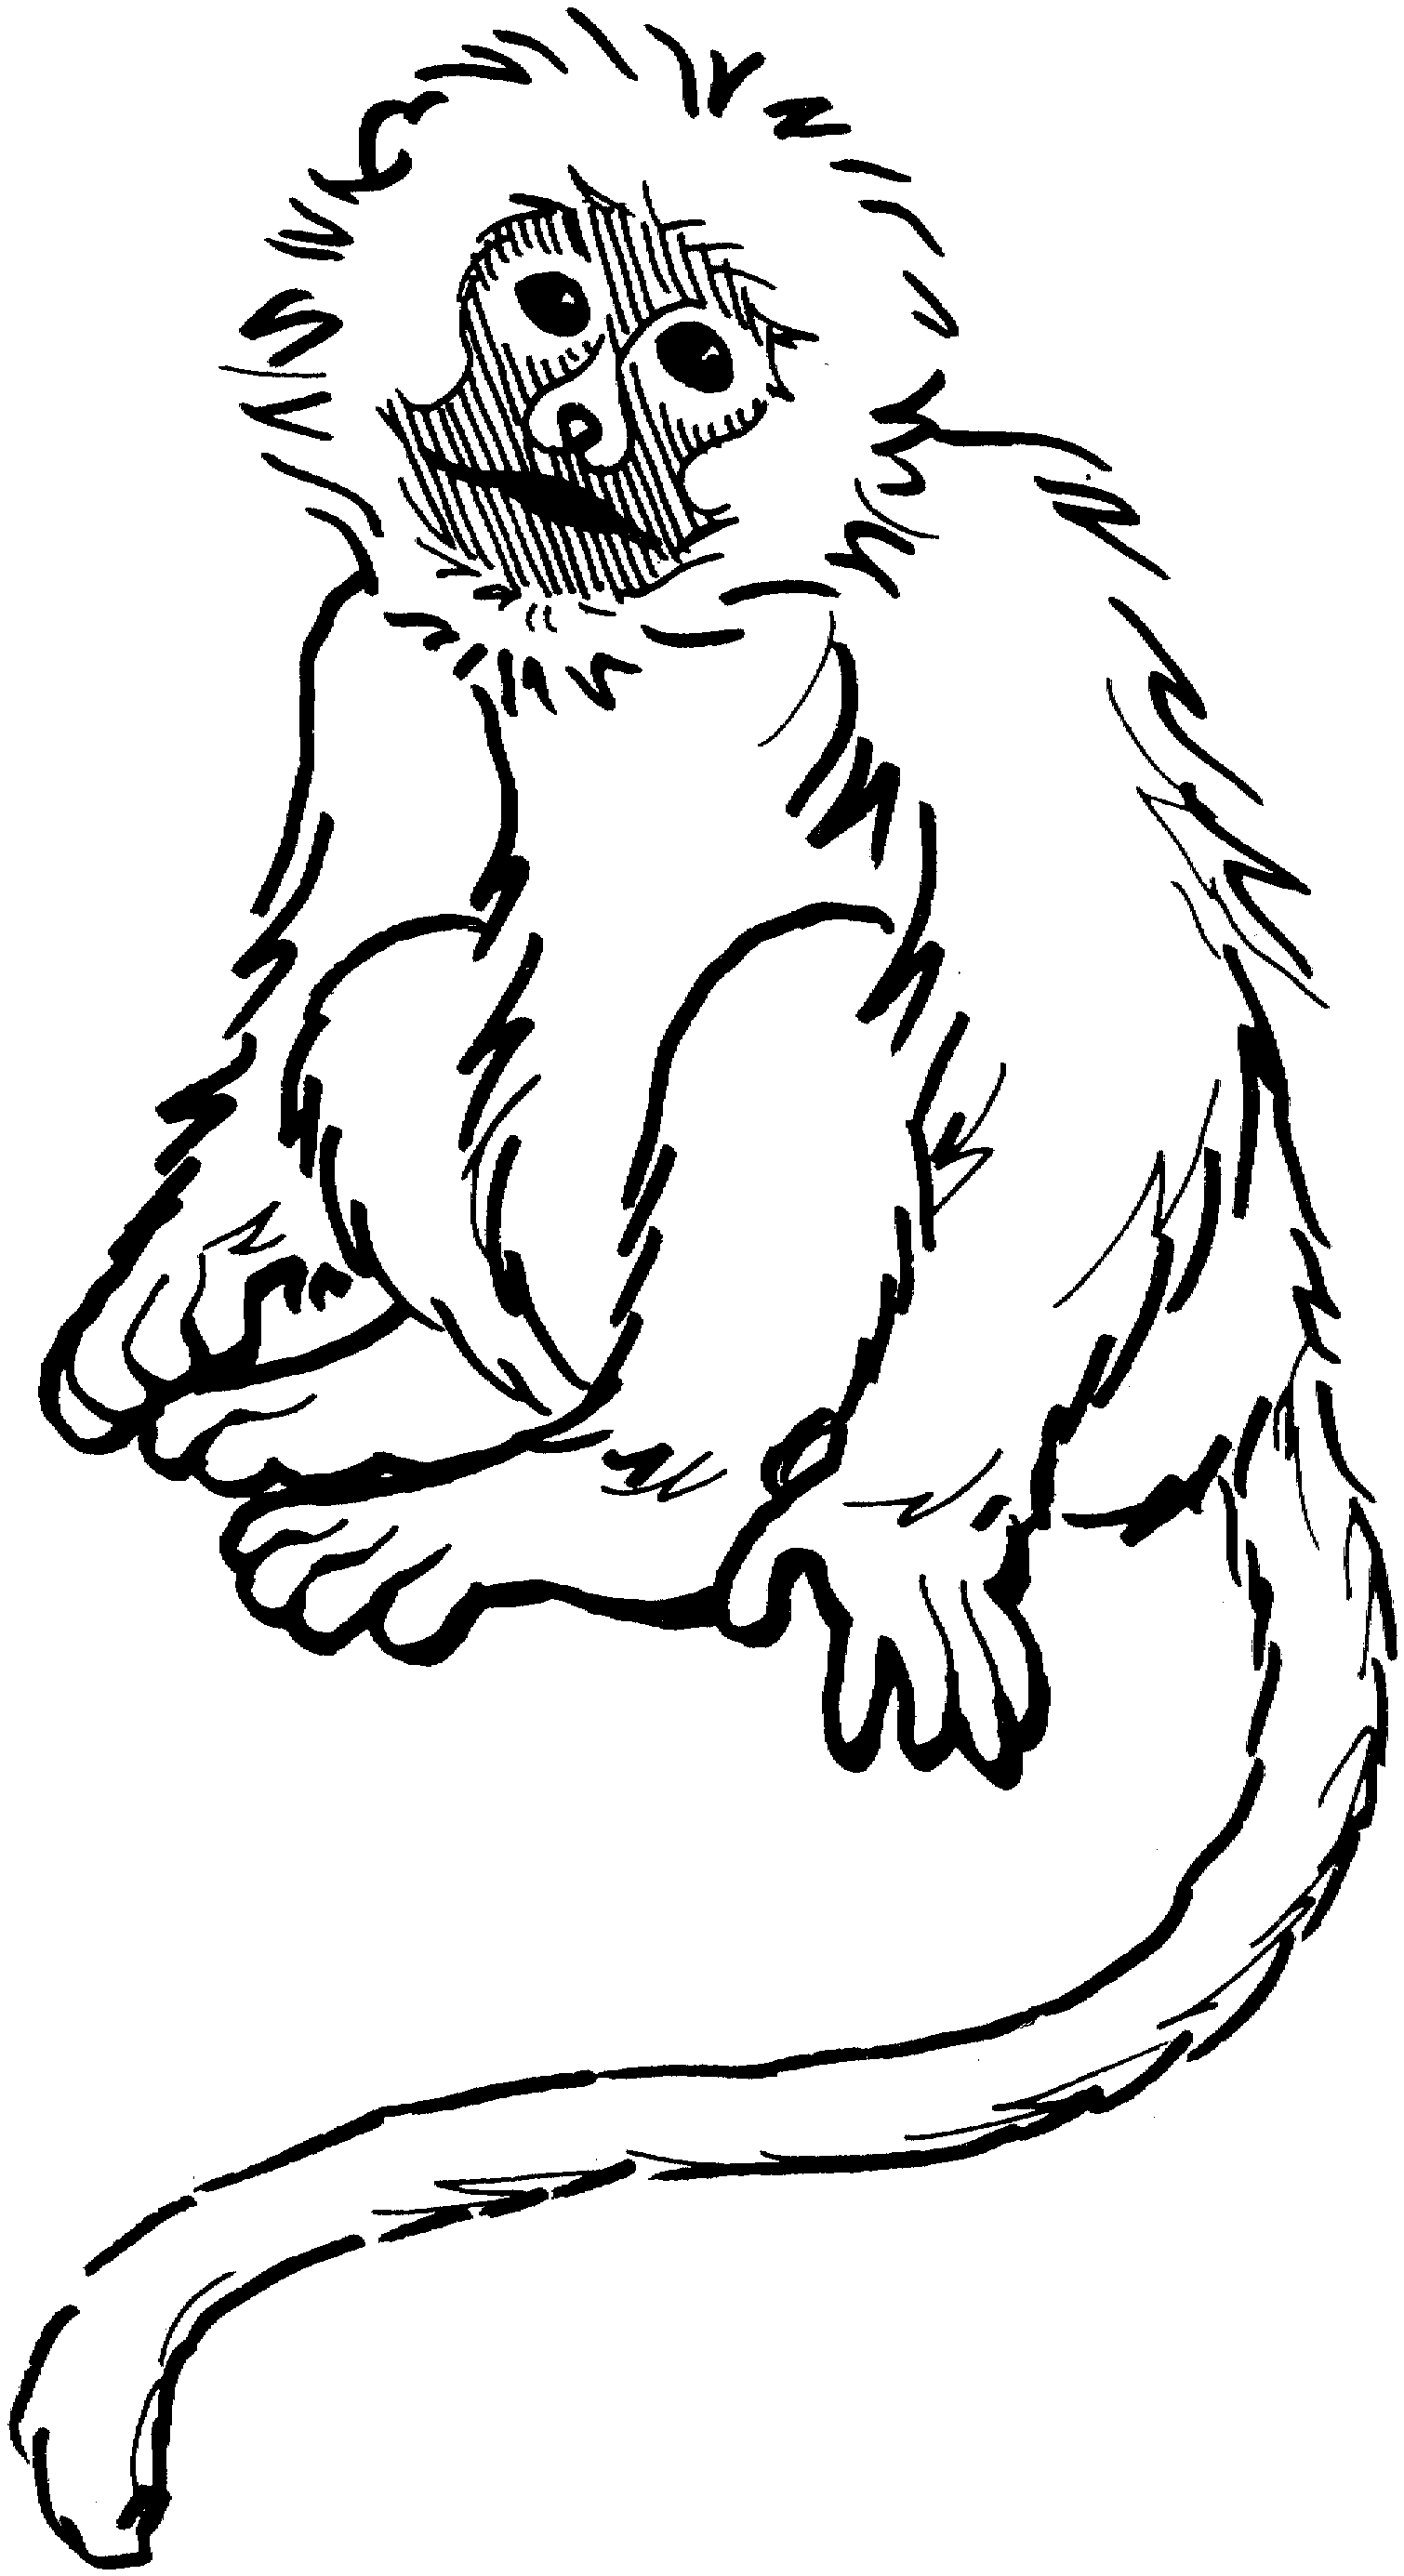 monkey coloring images free printable monkey coloring pages for kids cool2bkids images coloring monkey 